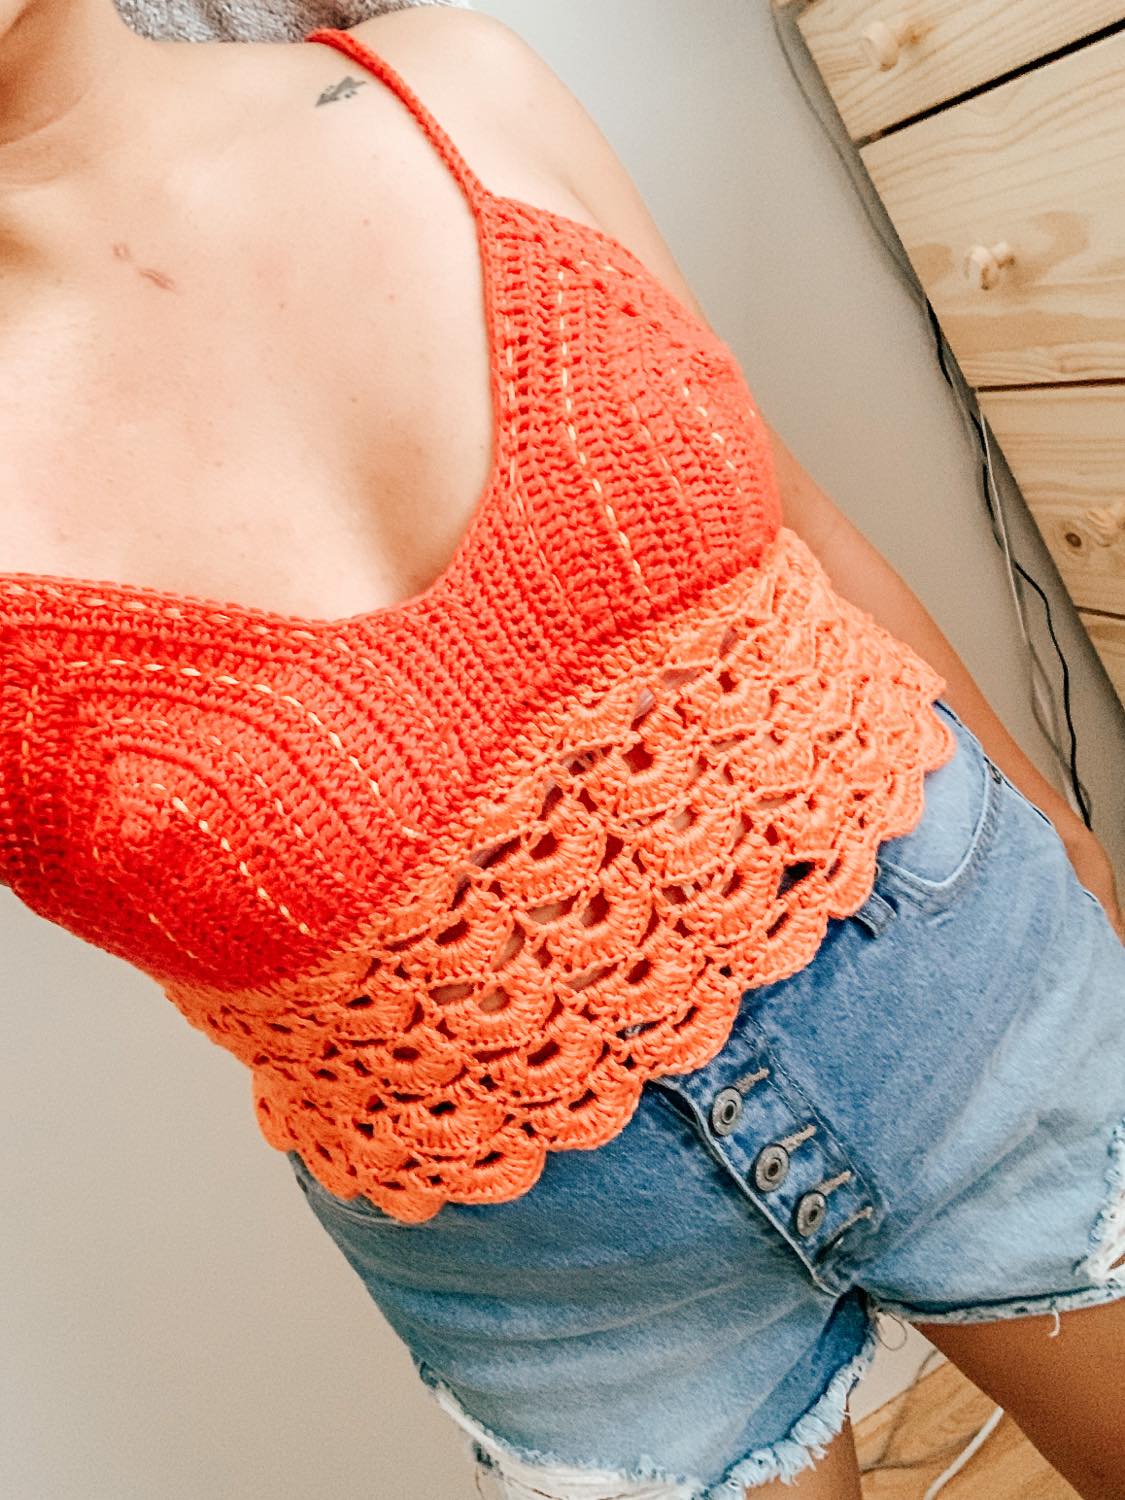 Crochet Lace T-back Bralette 